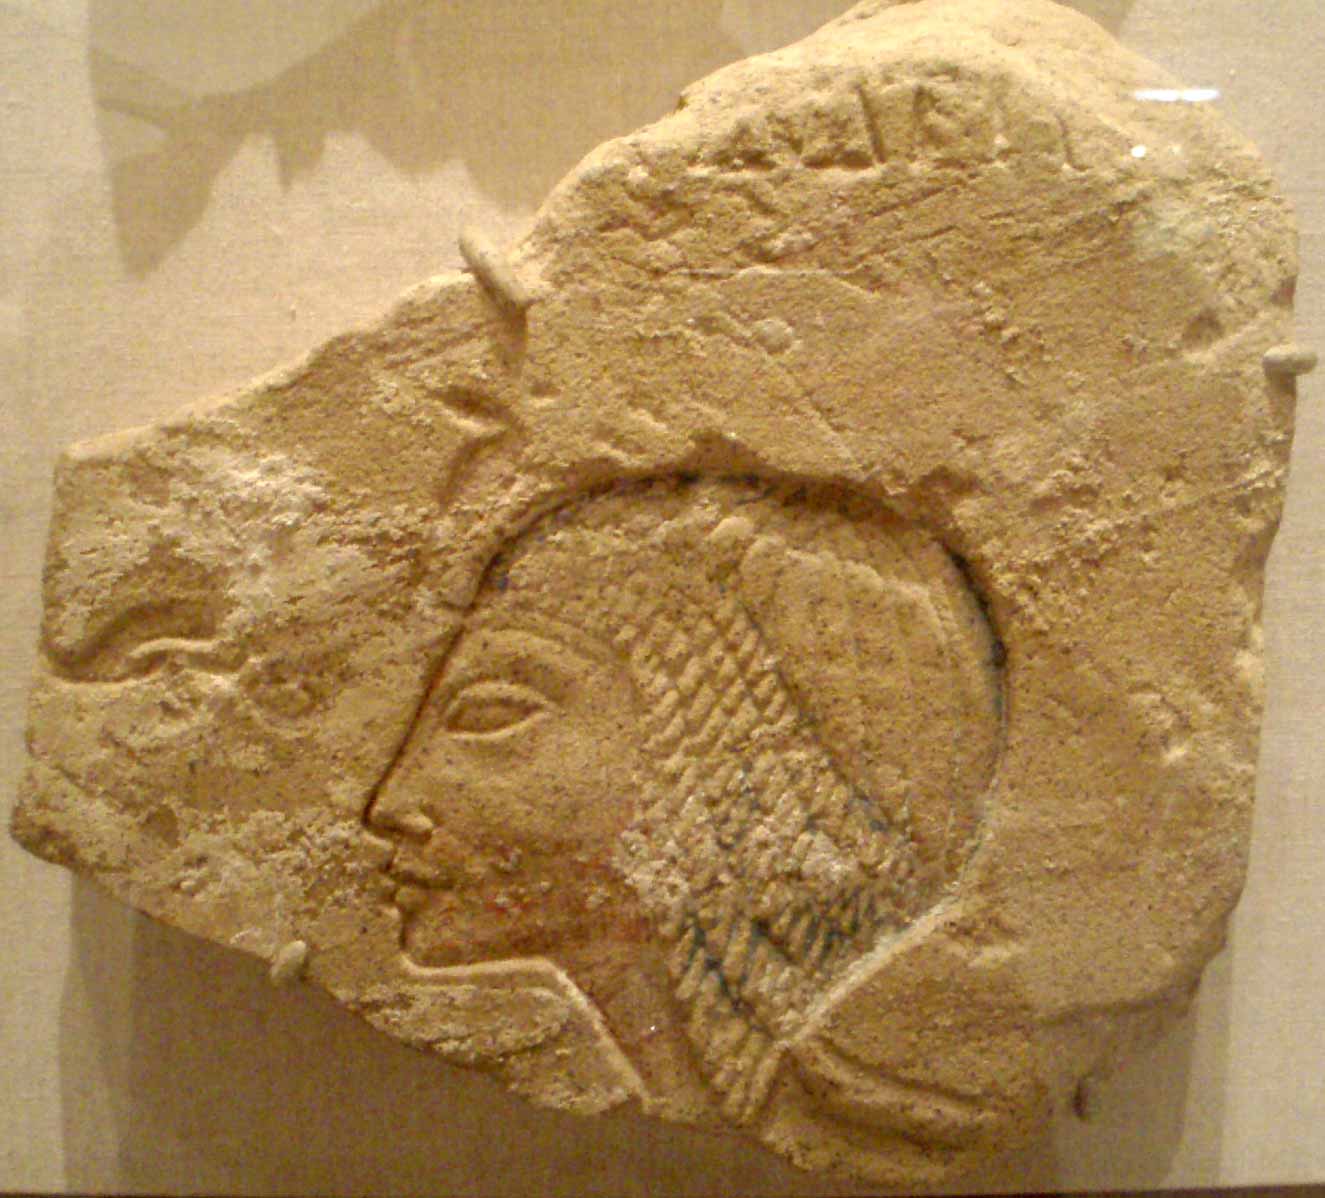 Datos sobre Nefertiti, la reina del antiguo Egipto.